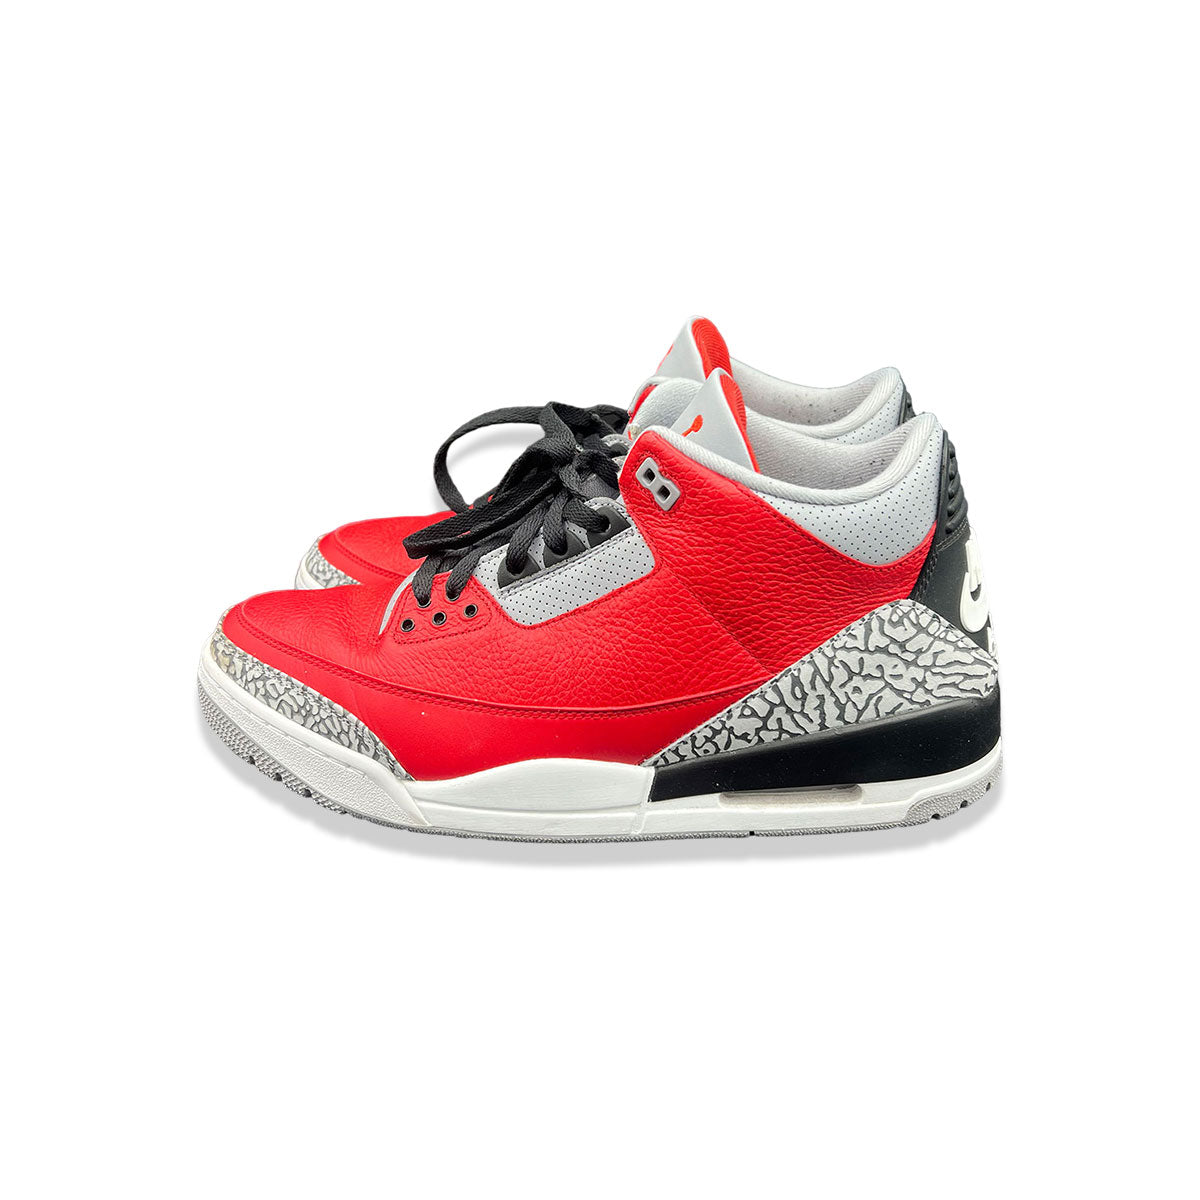 Air Jordan 3 Retro SE Unite Fire Red size 13 (Pre-Owned) - KickzStore